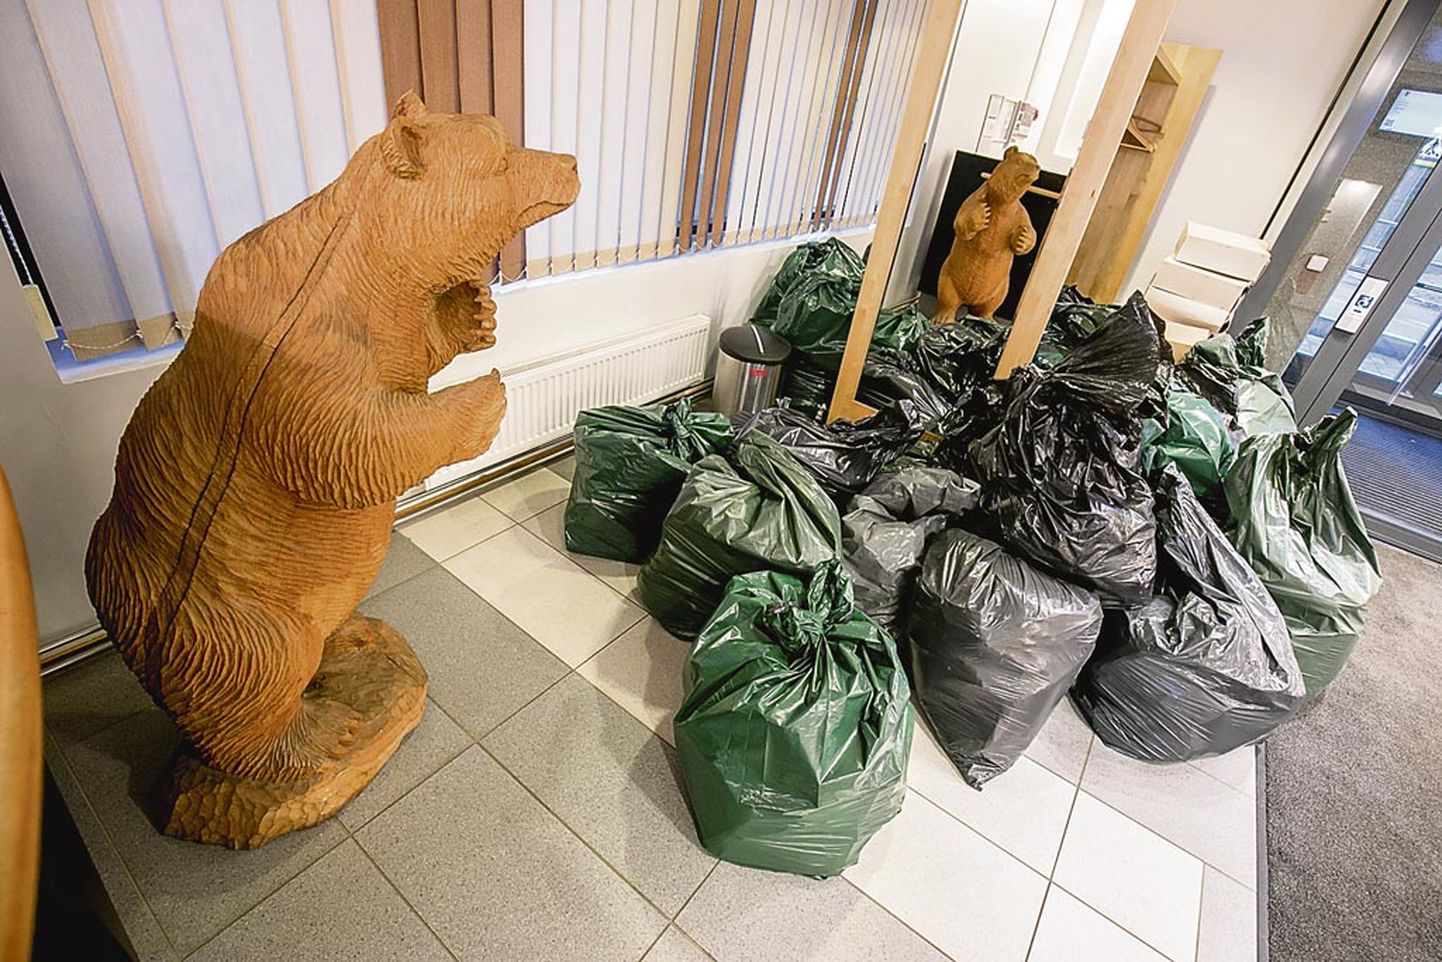 Tammepuust voolitud karu kui Pärnu maakonna vapiloom jälgis fuajees tummalt dokumente täis kilekottide kuhjumist.